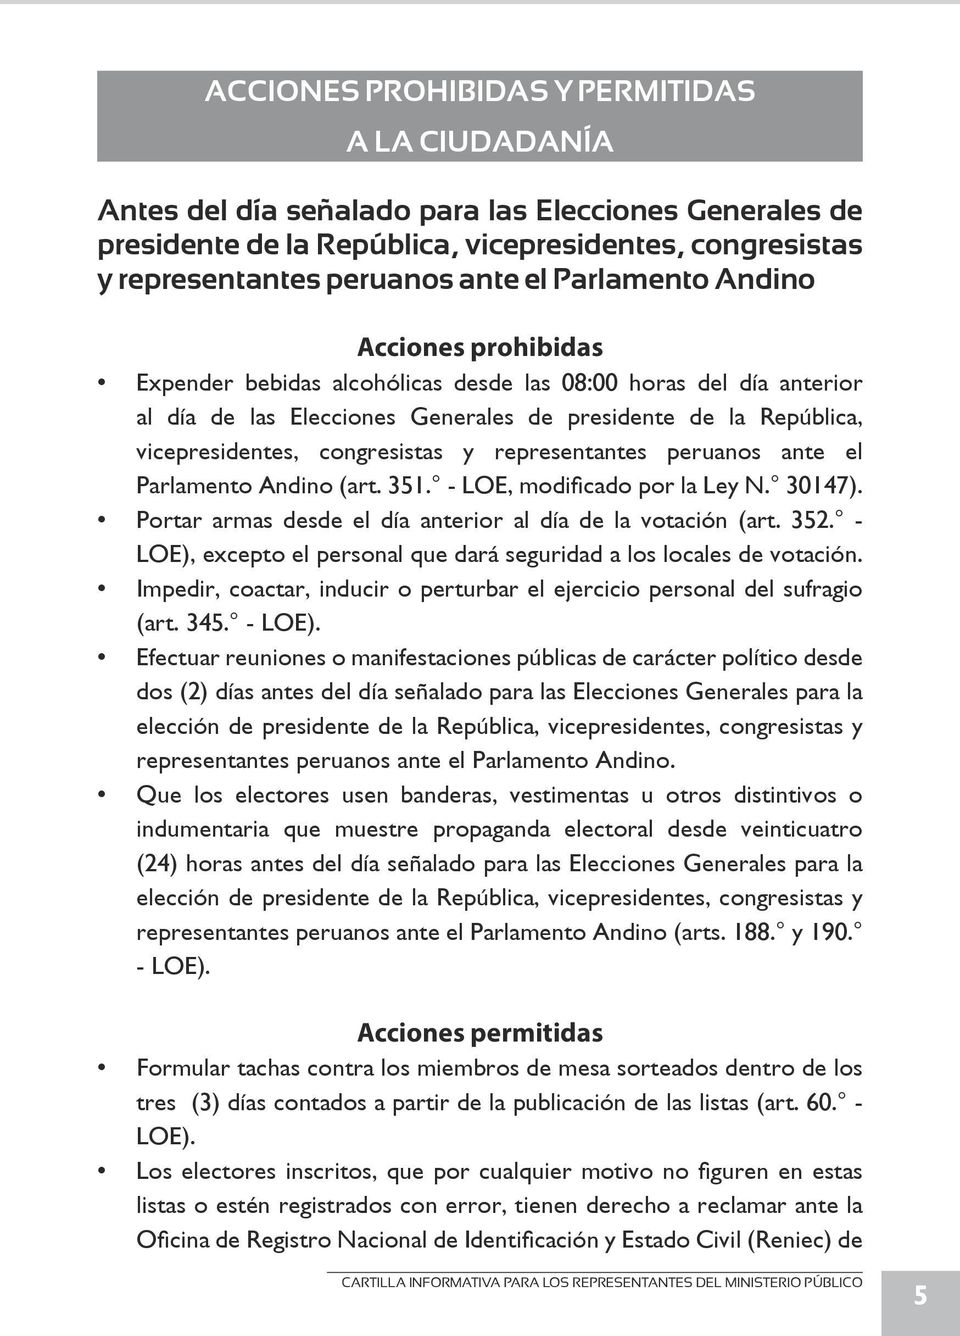 congresistas y representantes peruanos ante el Parlamento Andino (art. 351. - LOE, modificado por la Ley N. 30147). Portar armas desde el día anterior al día de la votación (art. 352.